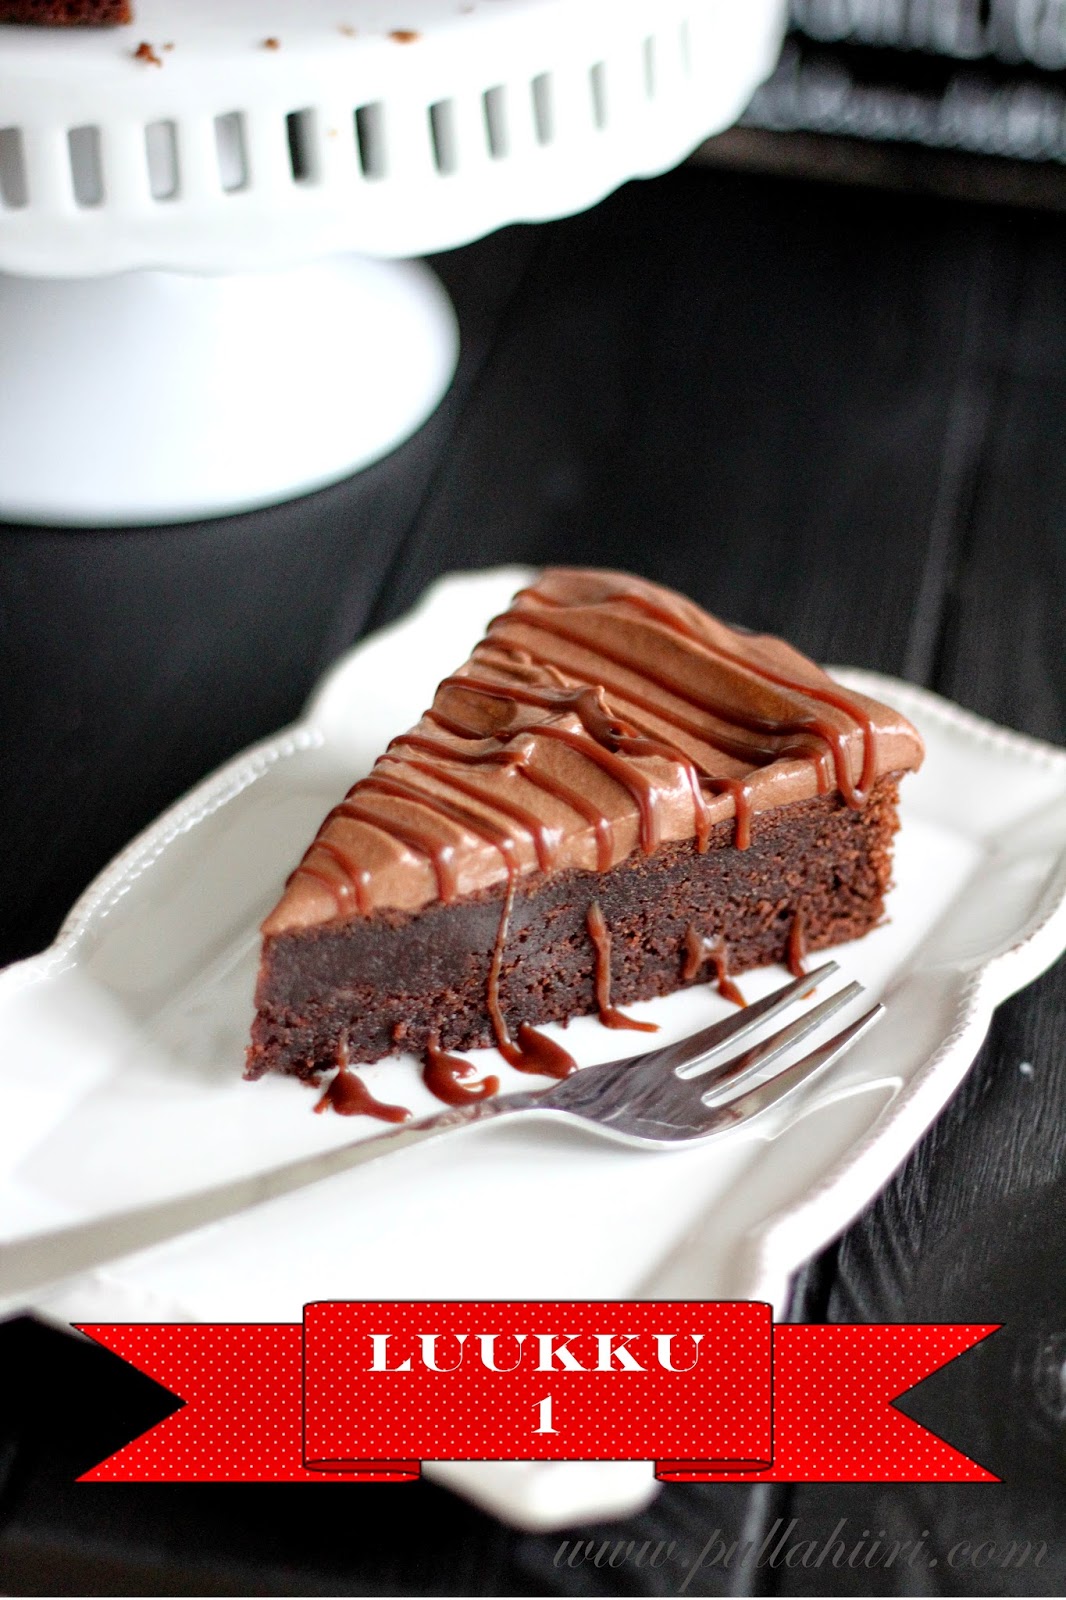 Joulukalenteri - Luukku 1: Suklainen mutakakku / Chocolate mud cake -  Pullahiiren leivontanurkka